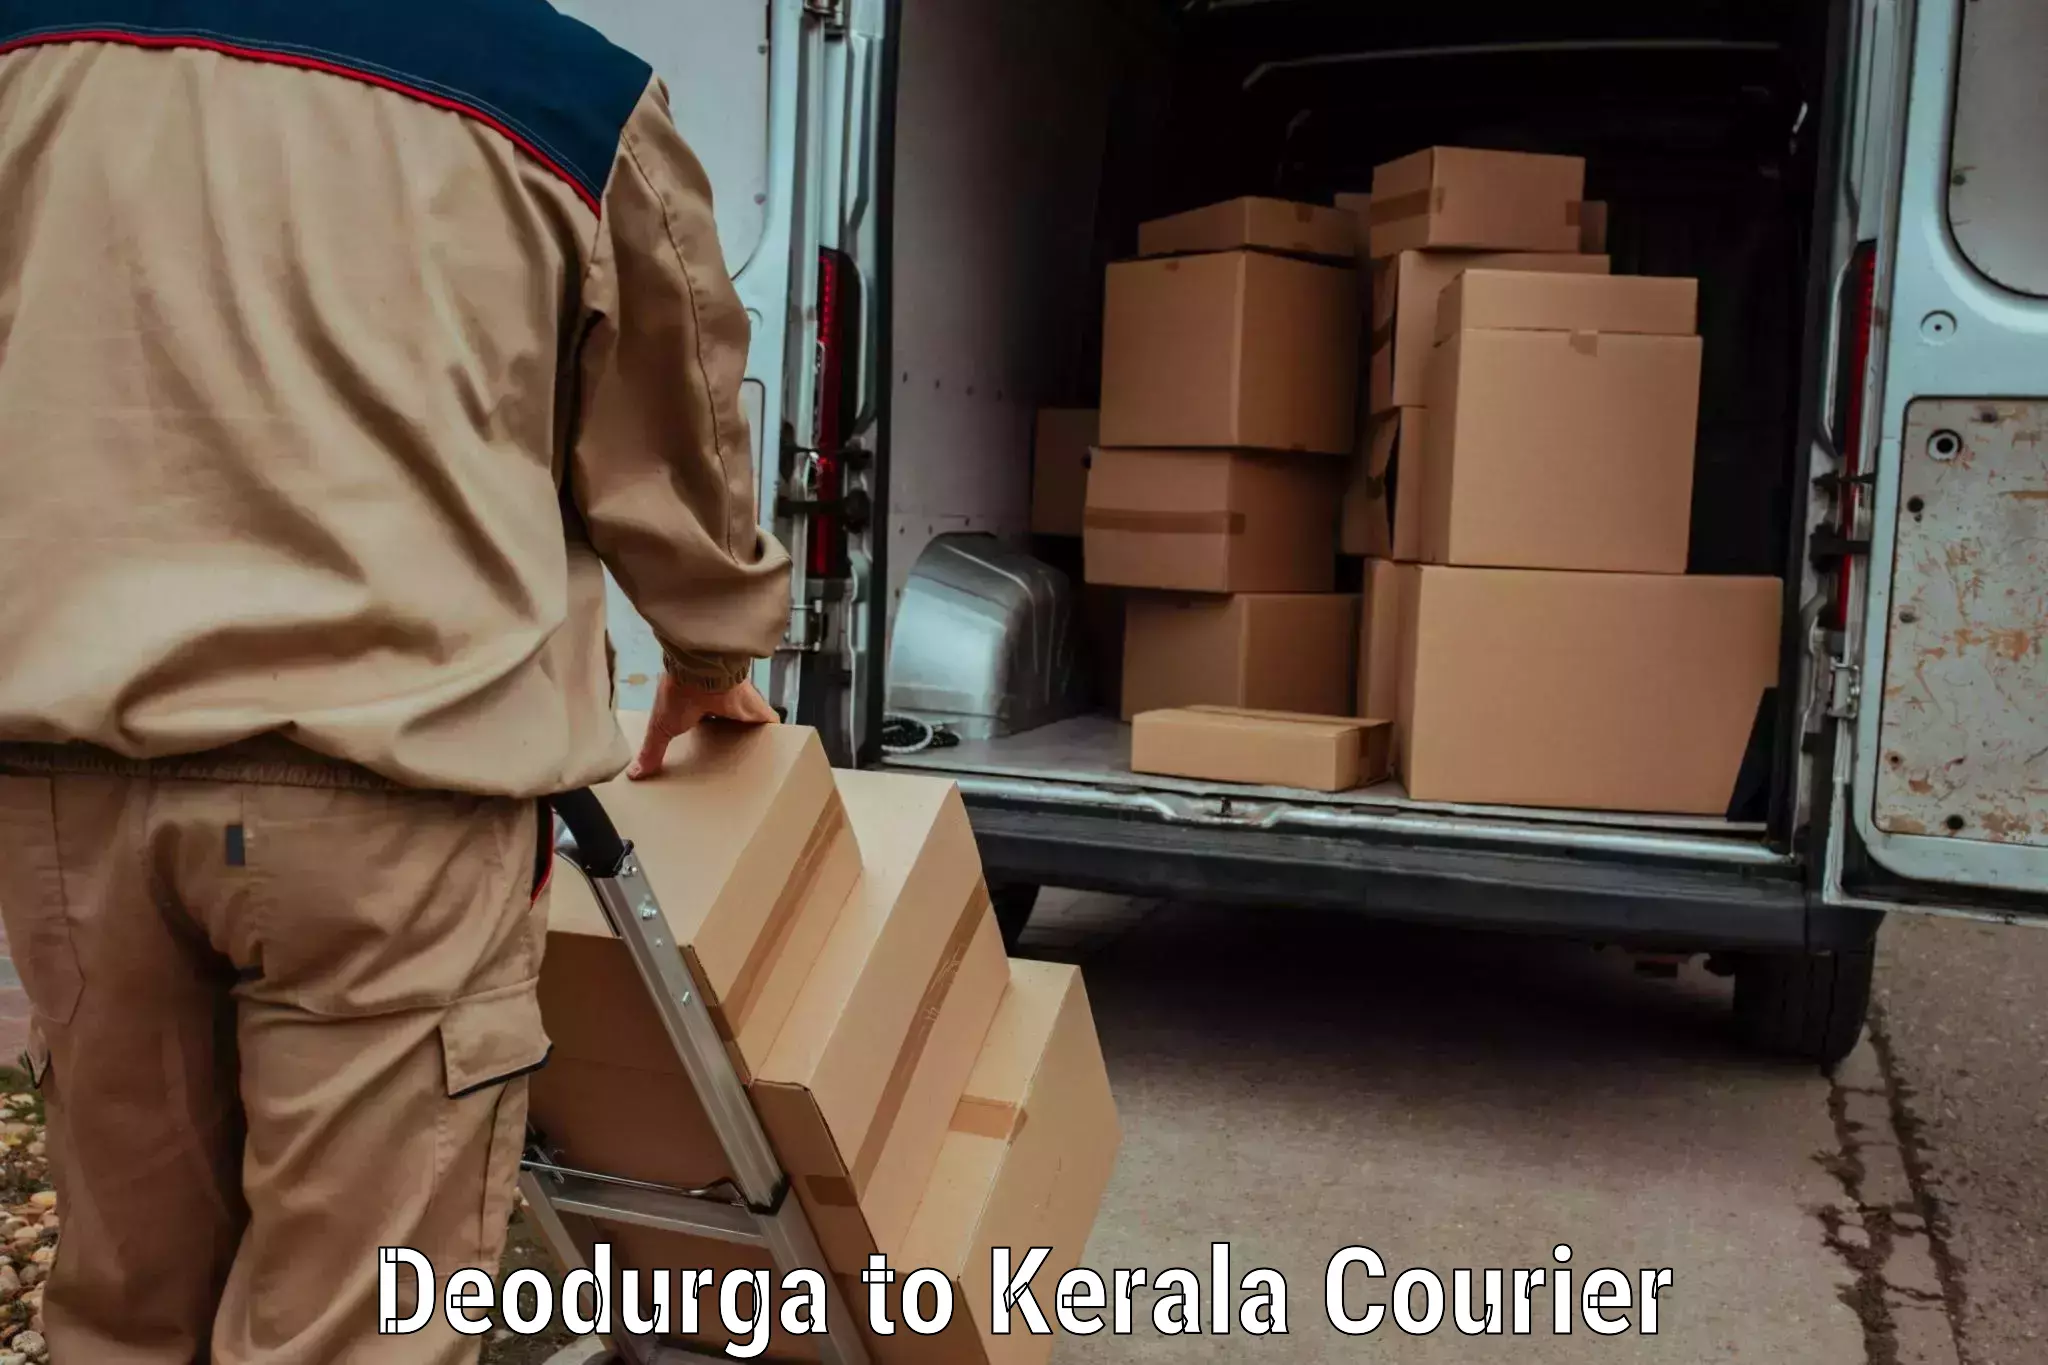 Efficient order fulfillment Deodurga to Kalanjoor